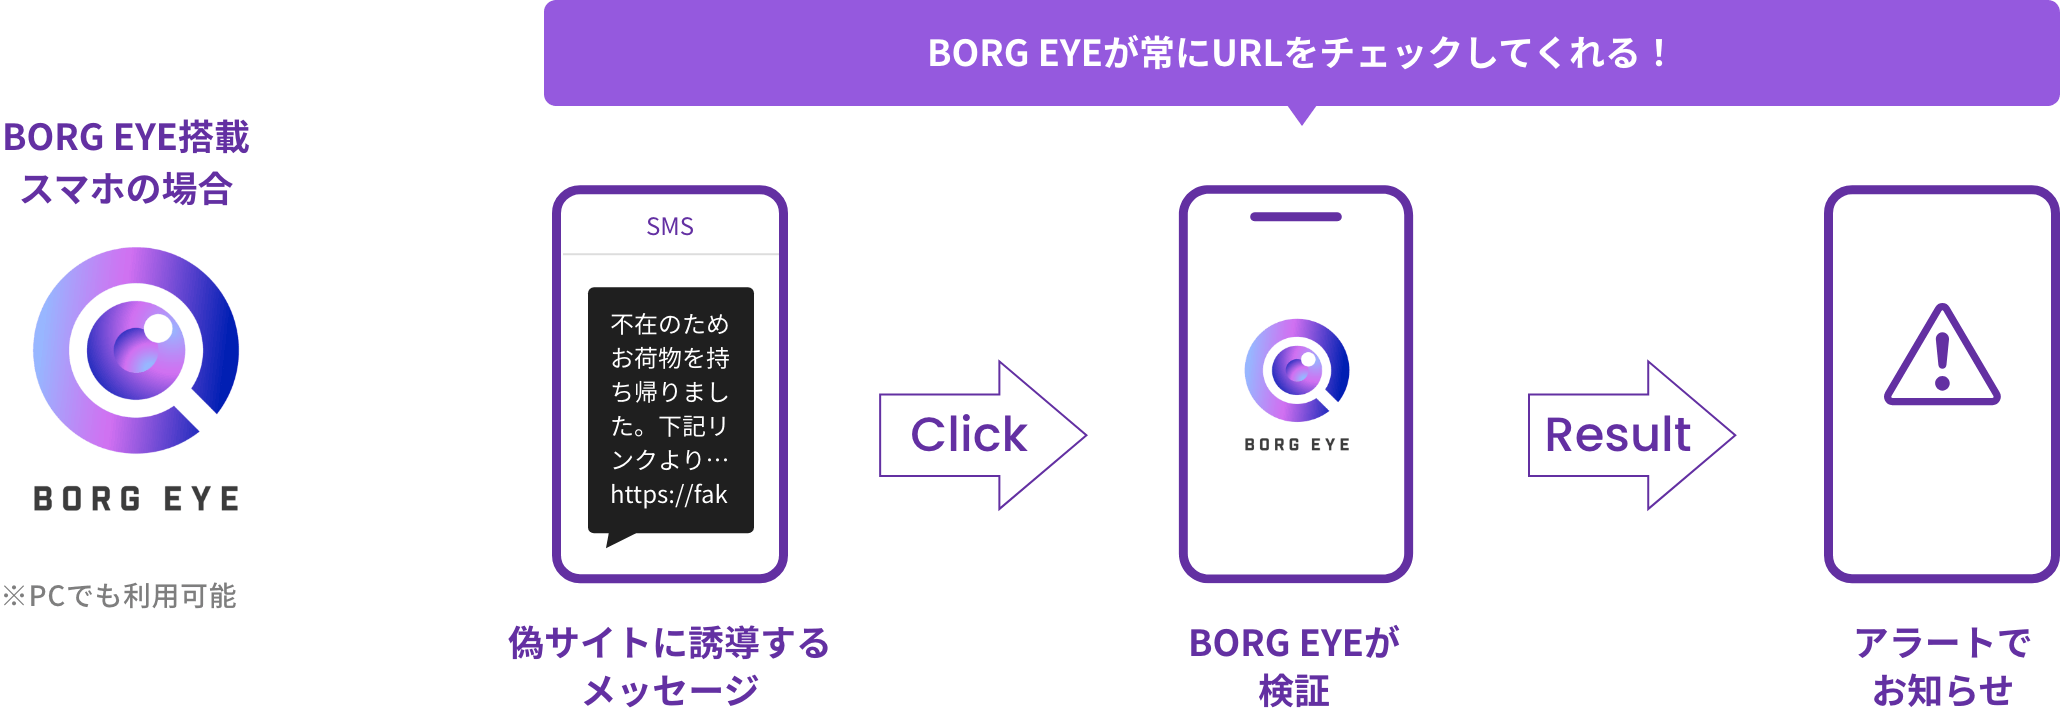 BORG EYE搭載
							スマホの場合BORG EYEが常にURLをチェックしてくれる！偽サイトからの
							メッセージ→BORG EYEが検証→アラートでお知らせ